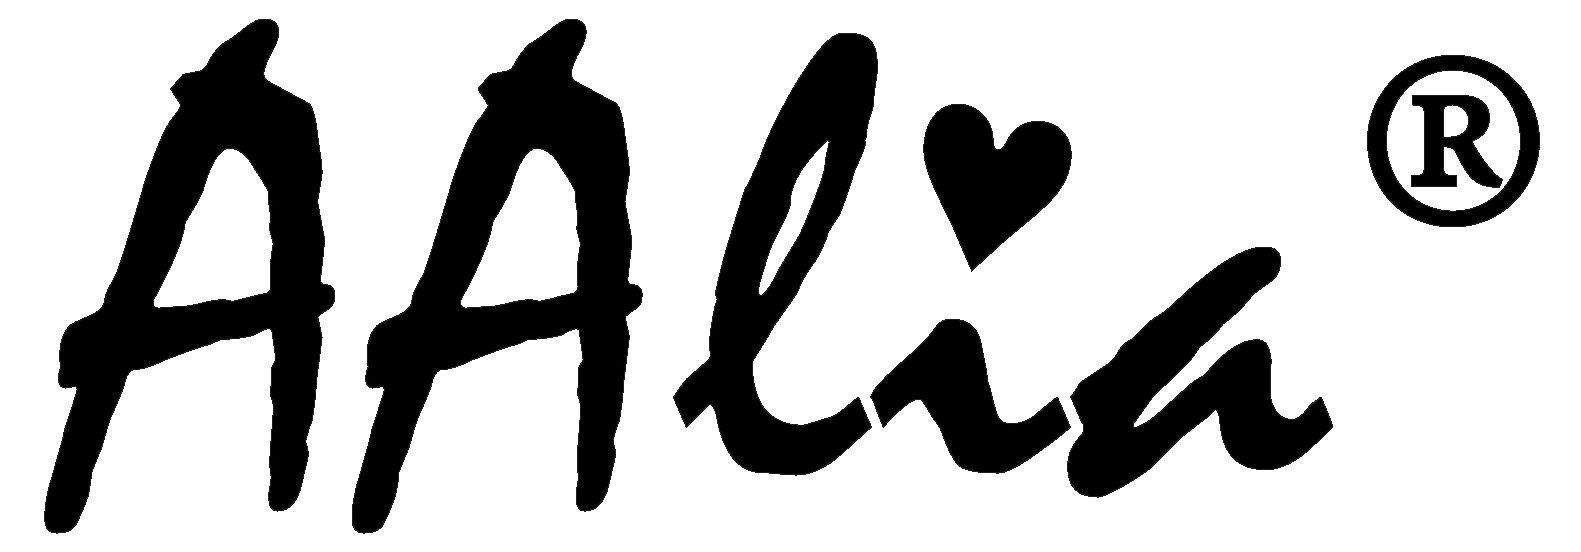 logo aalia s ochranou značkou